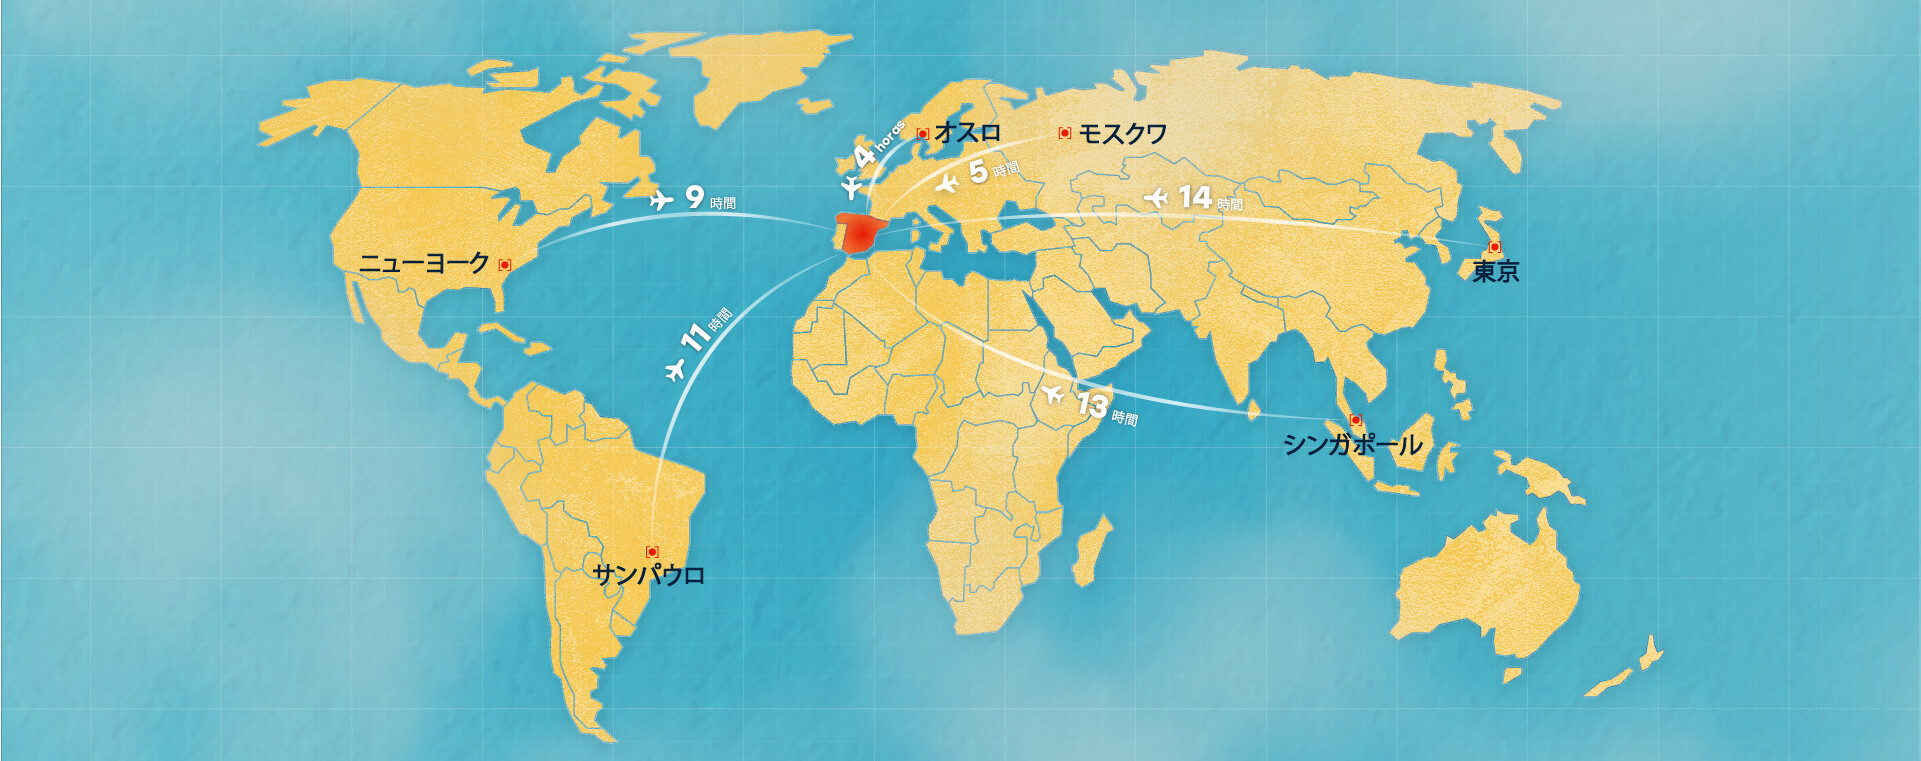 世界地図と飛行時間距離